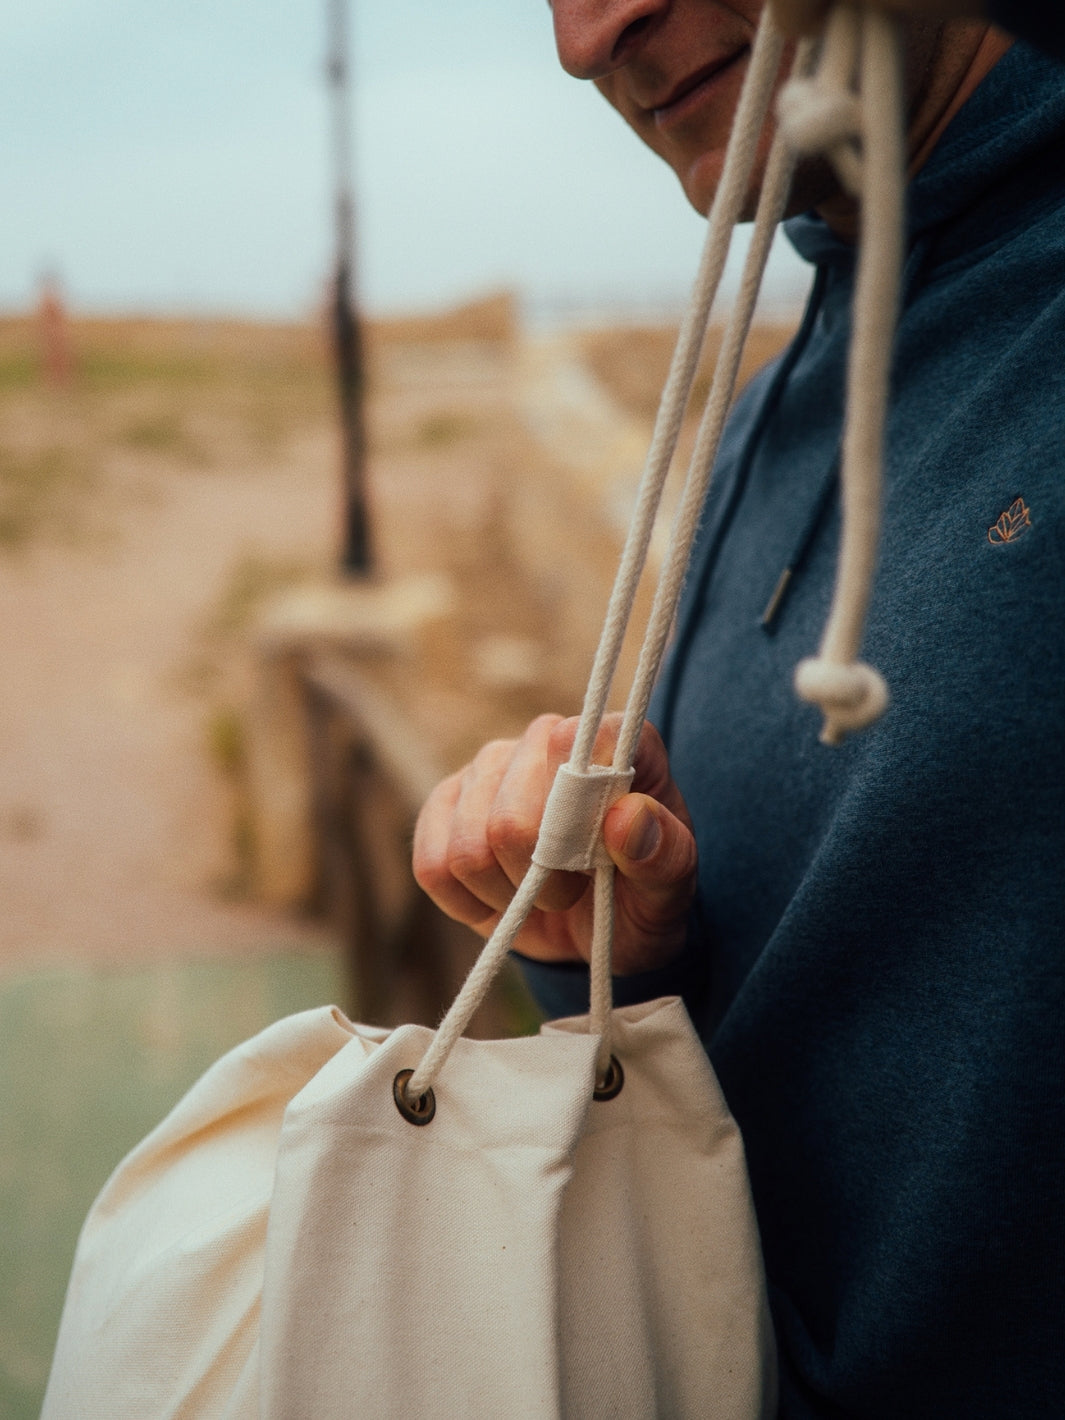 Marine plátěná taška z biobavlny přírodní nebarvená muž utahuje šňůrky na tašce